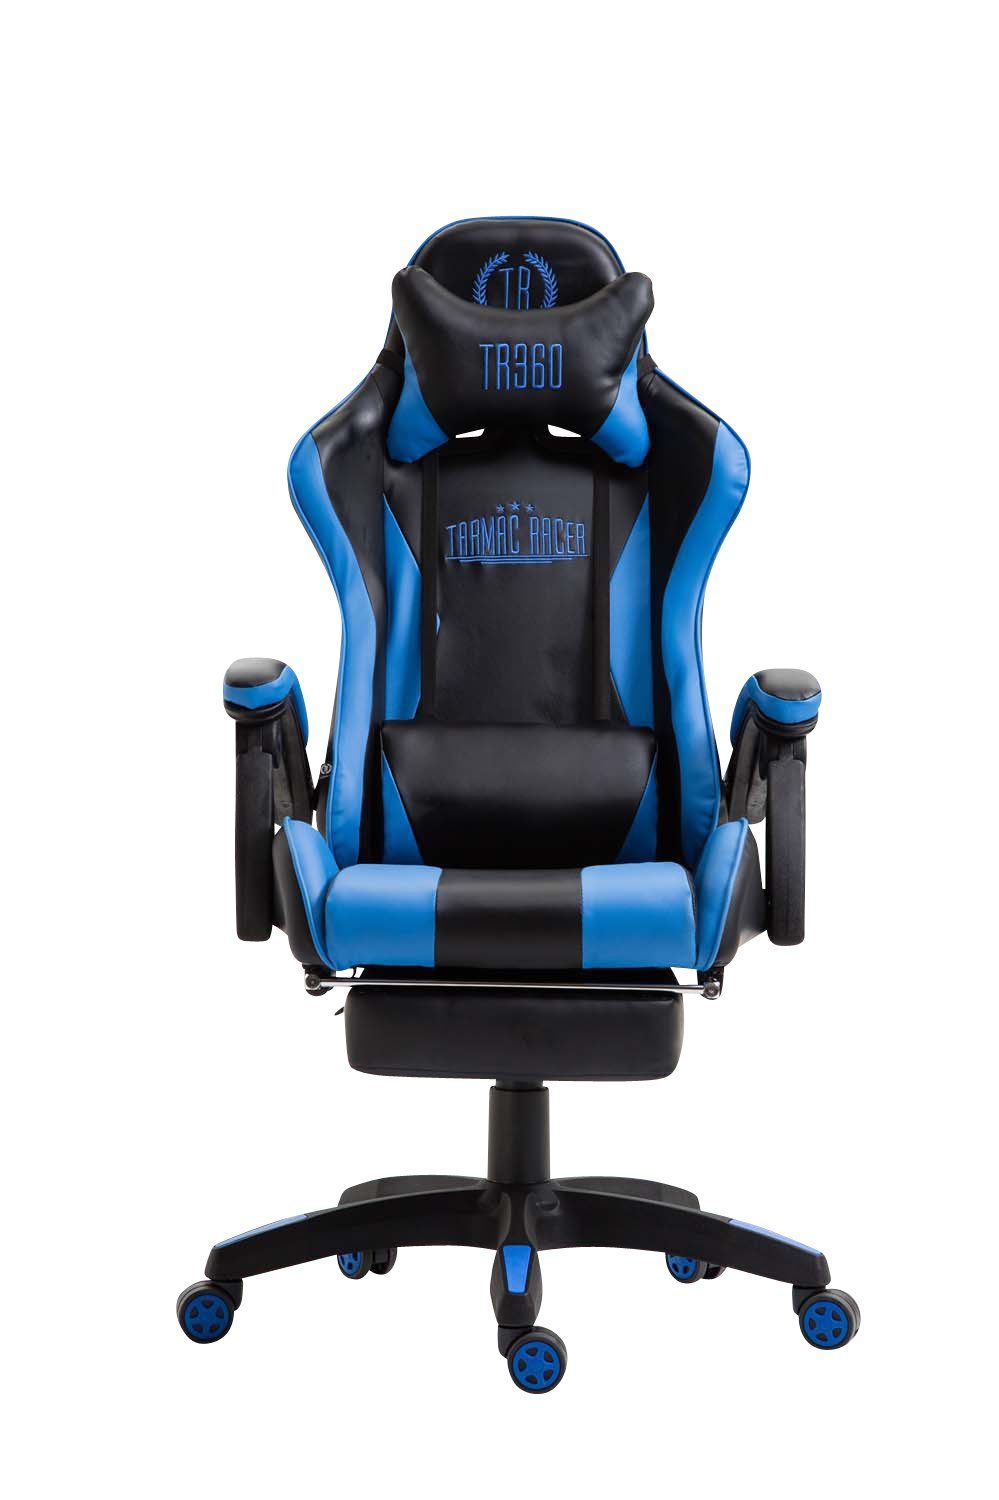 höhenverstellbar Kunstleder, CLP schwarz/blau Gaming drehbar Ignite Chair und